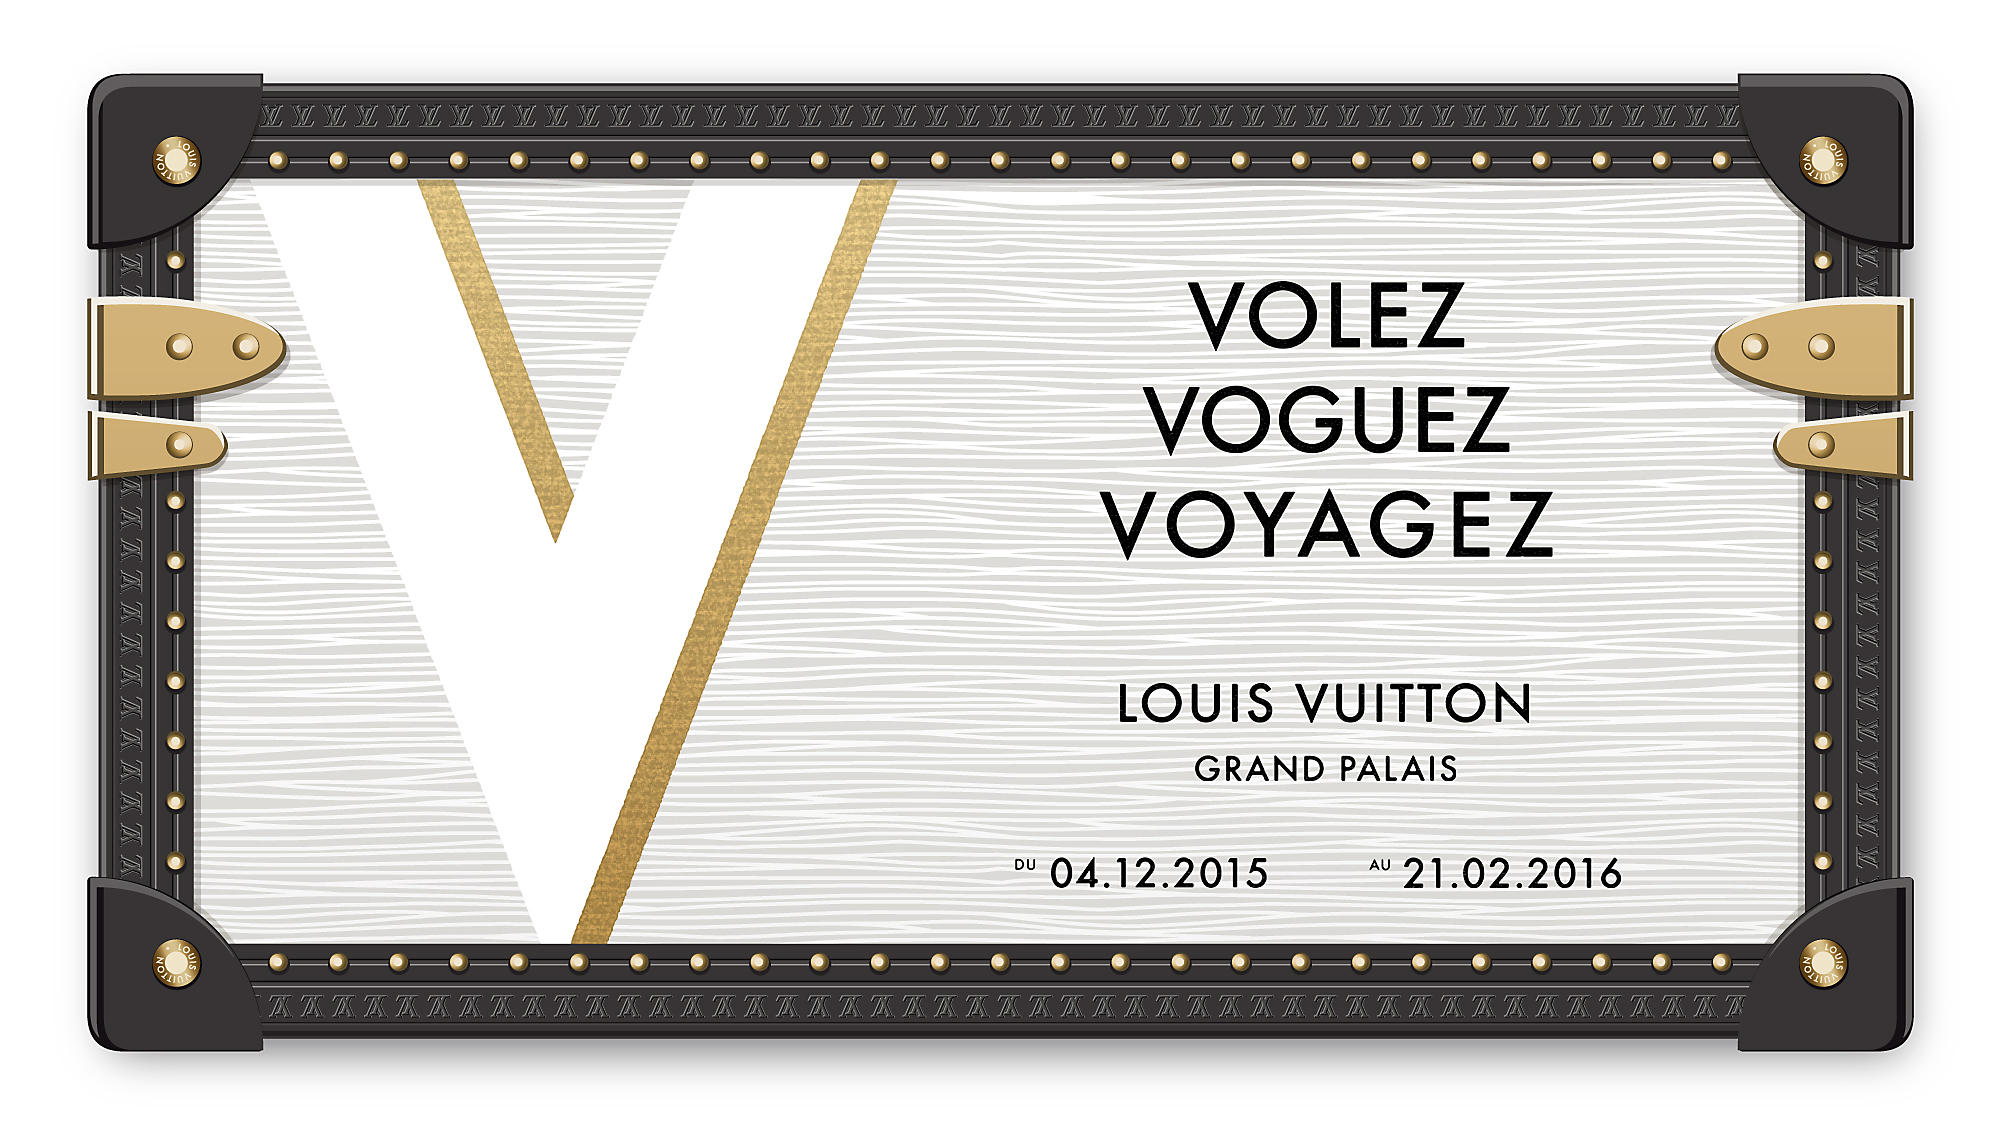 Volez, Vogues, Voyagez by Louis Vuitton – Code Noir Style